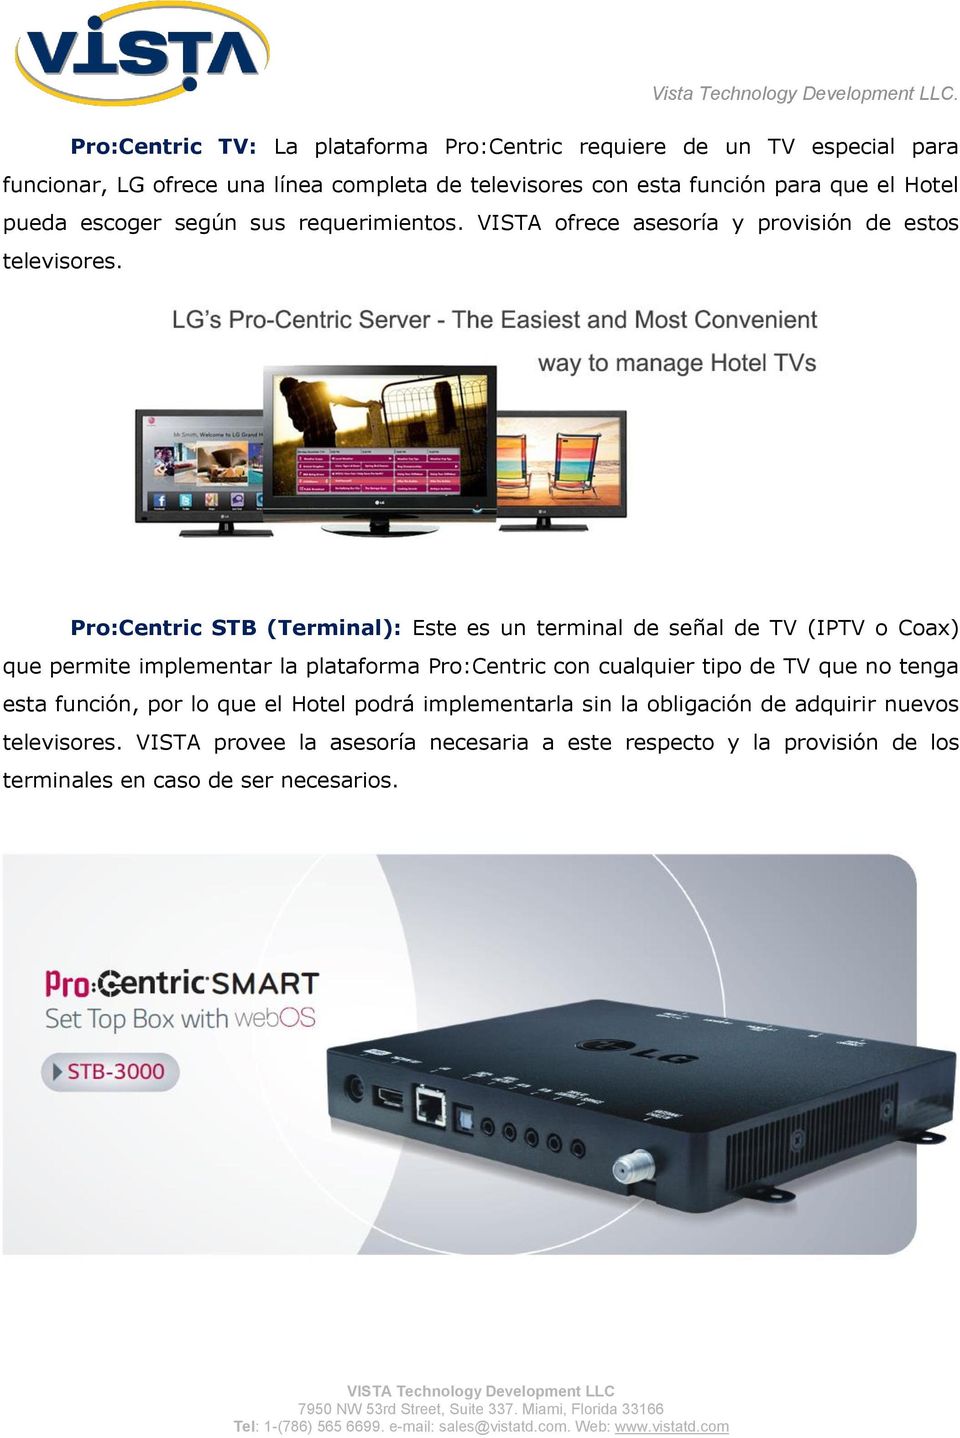 Pro:Centric STB (Terminal): Este es un terminal de señal de TV (IPTV o Coax) que permite implementar la plataforma Pro:Centric con cualquier tipo de TV que no